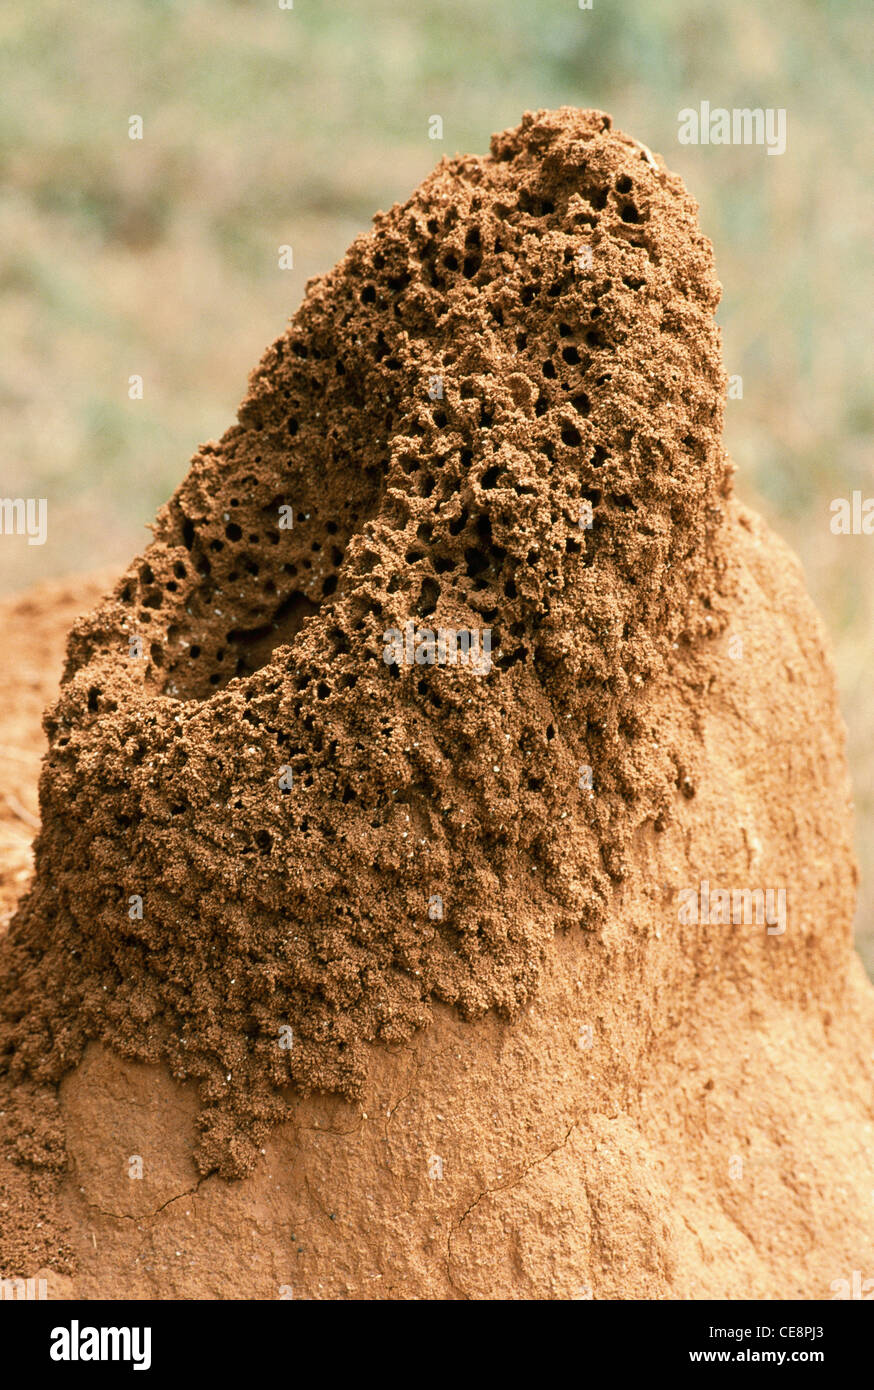 Ameisenhaufen, Ameisenkolonie, Ameisennest, Ameisenhügel, indien, asien Stockfoto